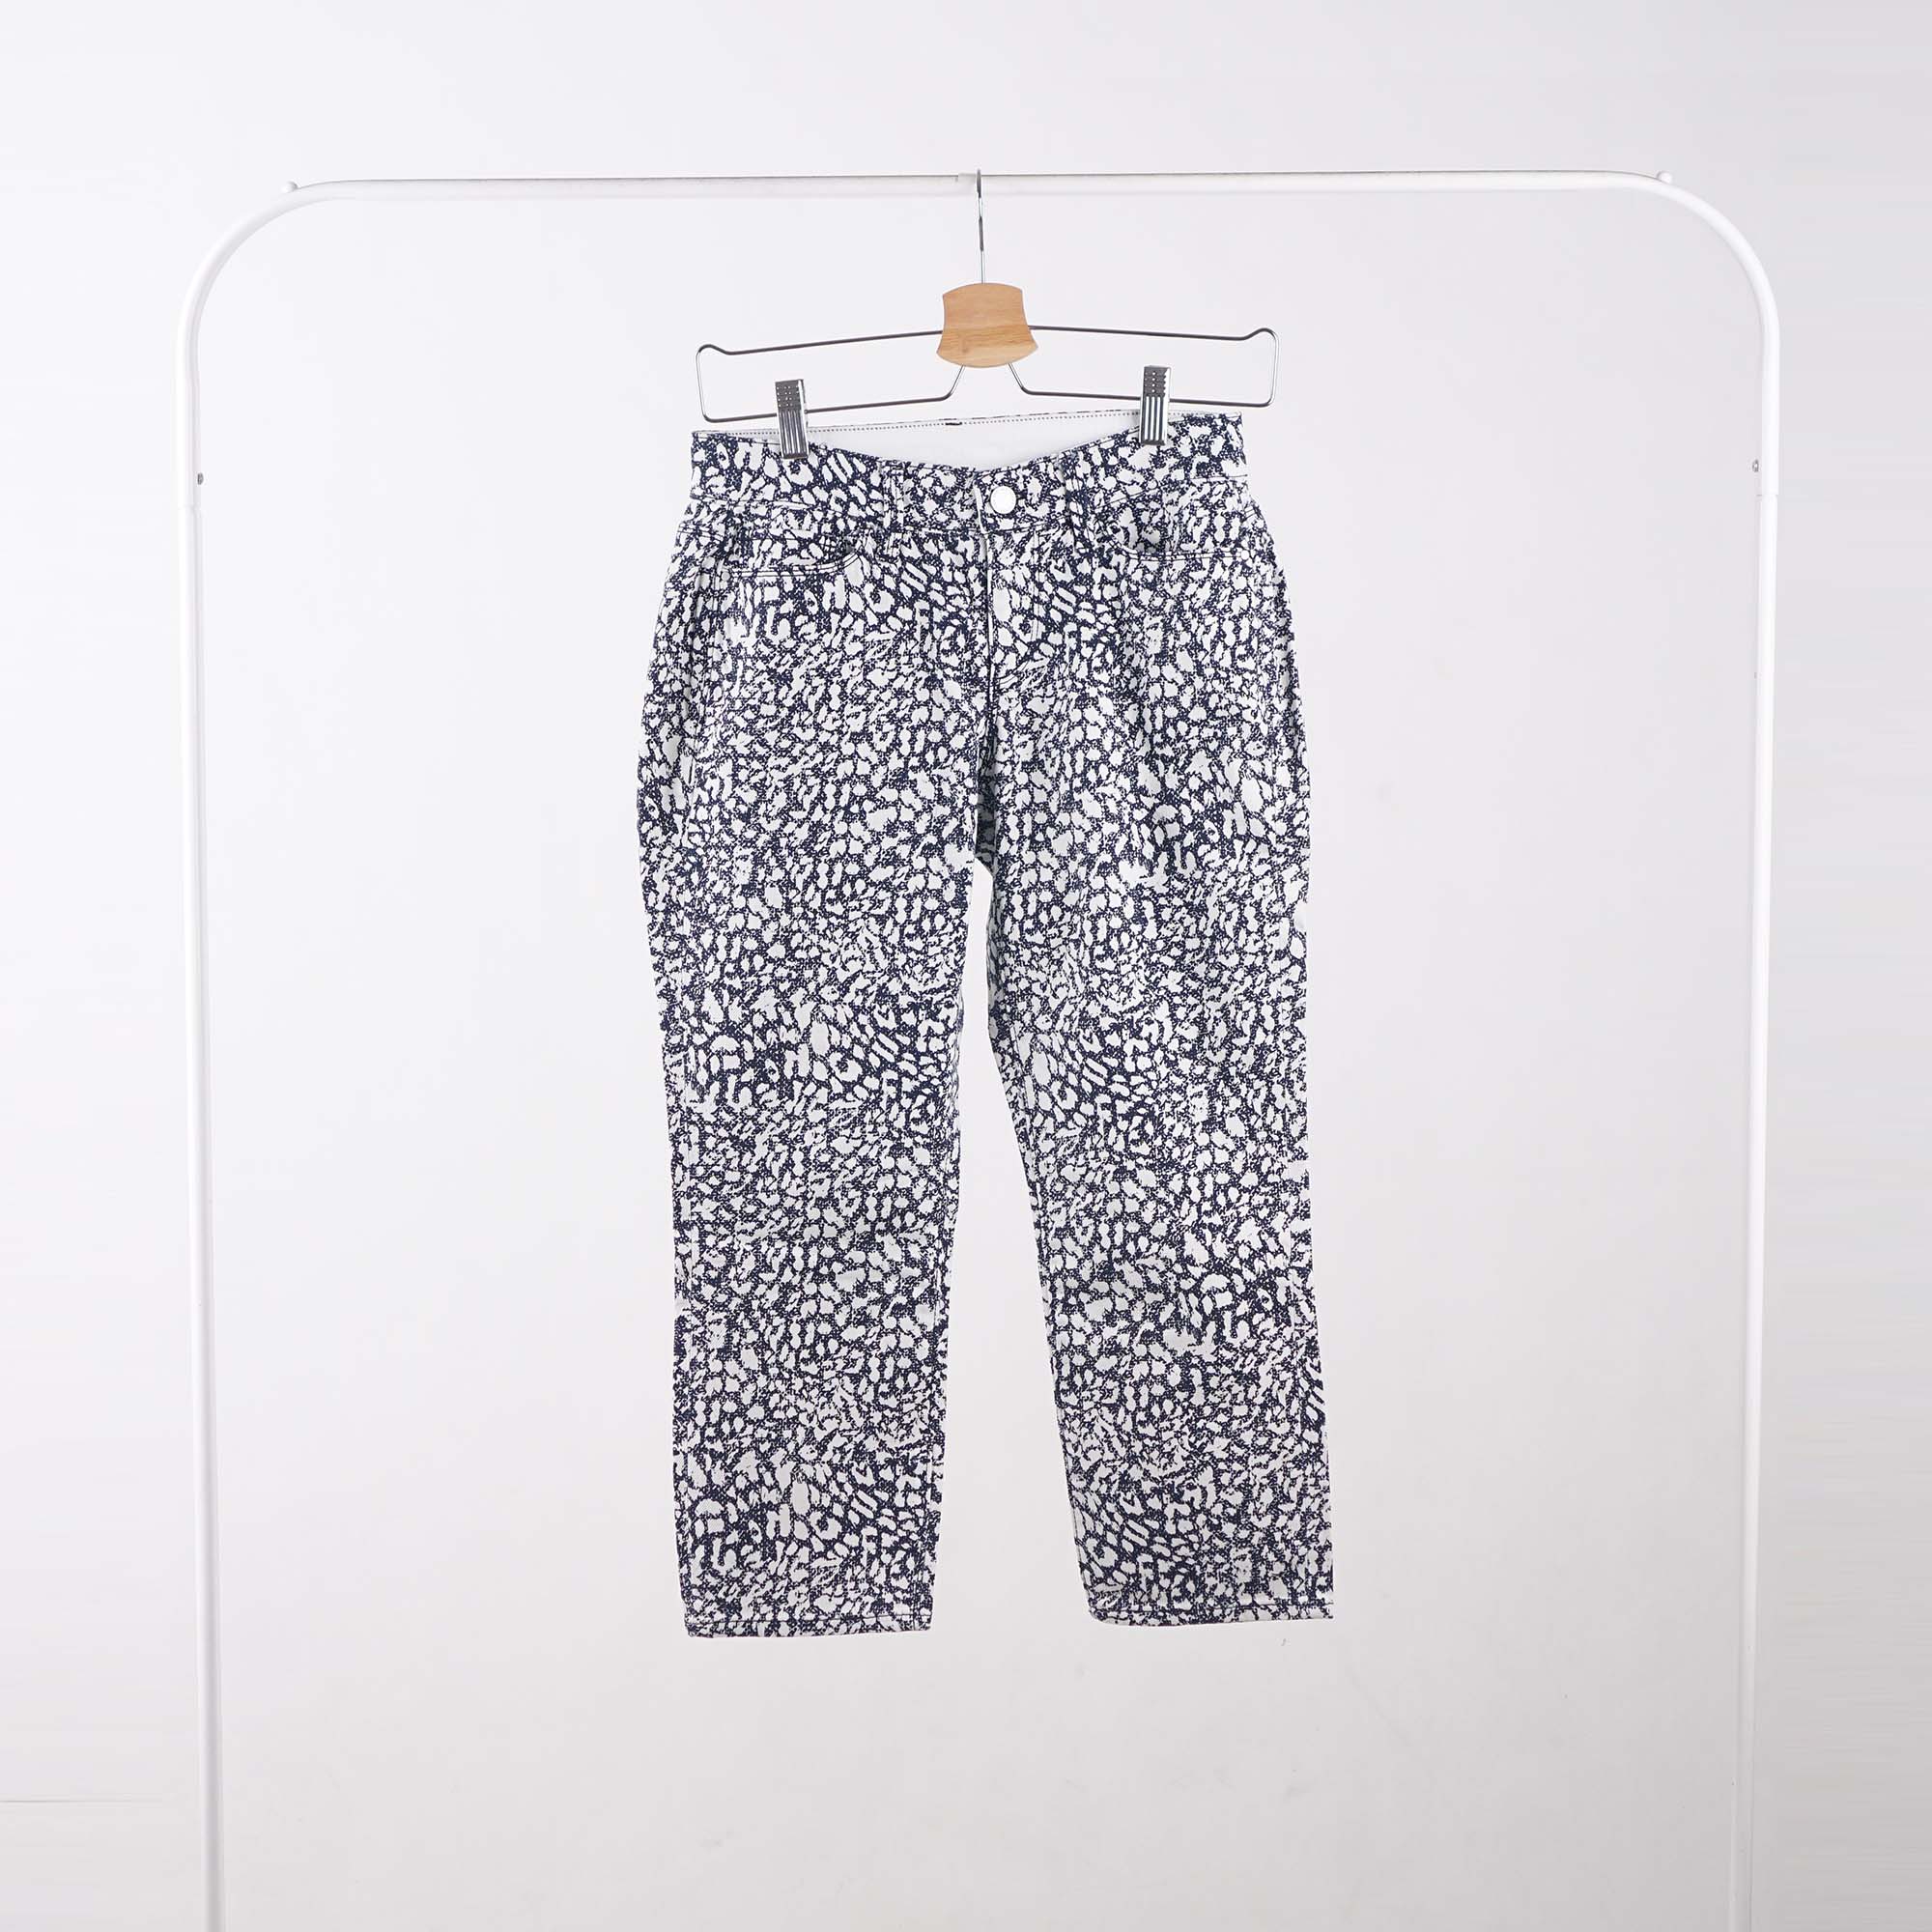 Celana Panjang Wanita - Navy Pattern Jeans (LDW 75)